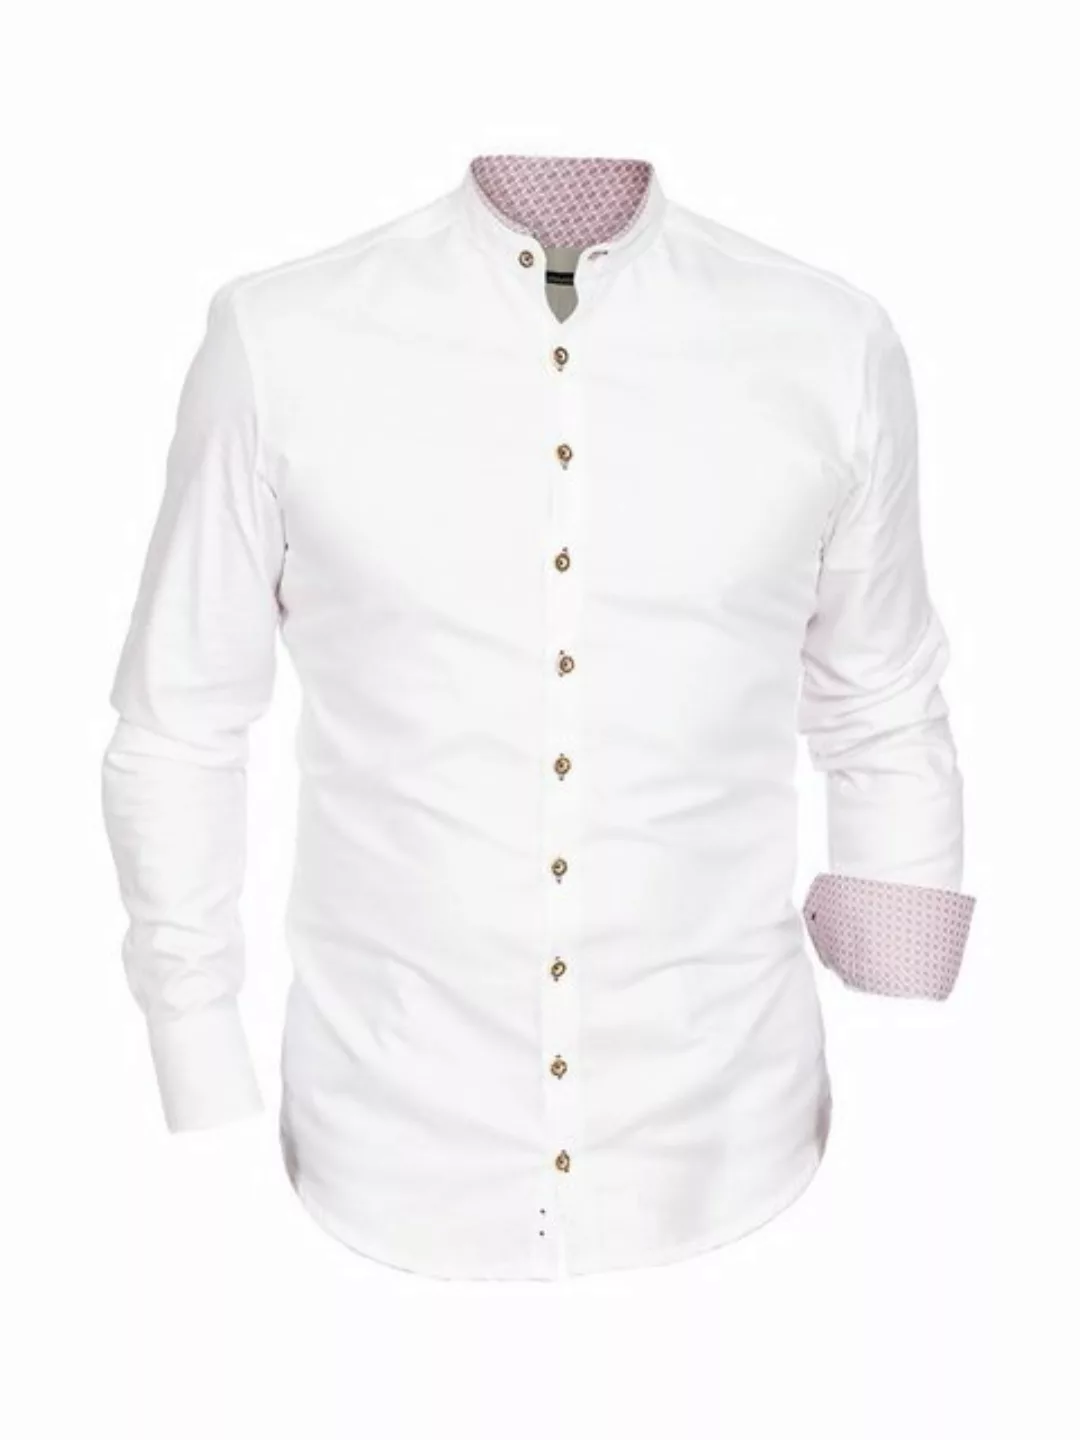 Gipfelstürmer Trachtenhemd Hemd Stehkragen 420004-3829-138 weiß hochrot (Sl günstig online kaufen